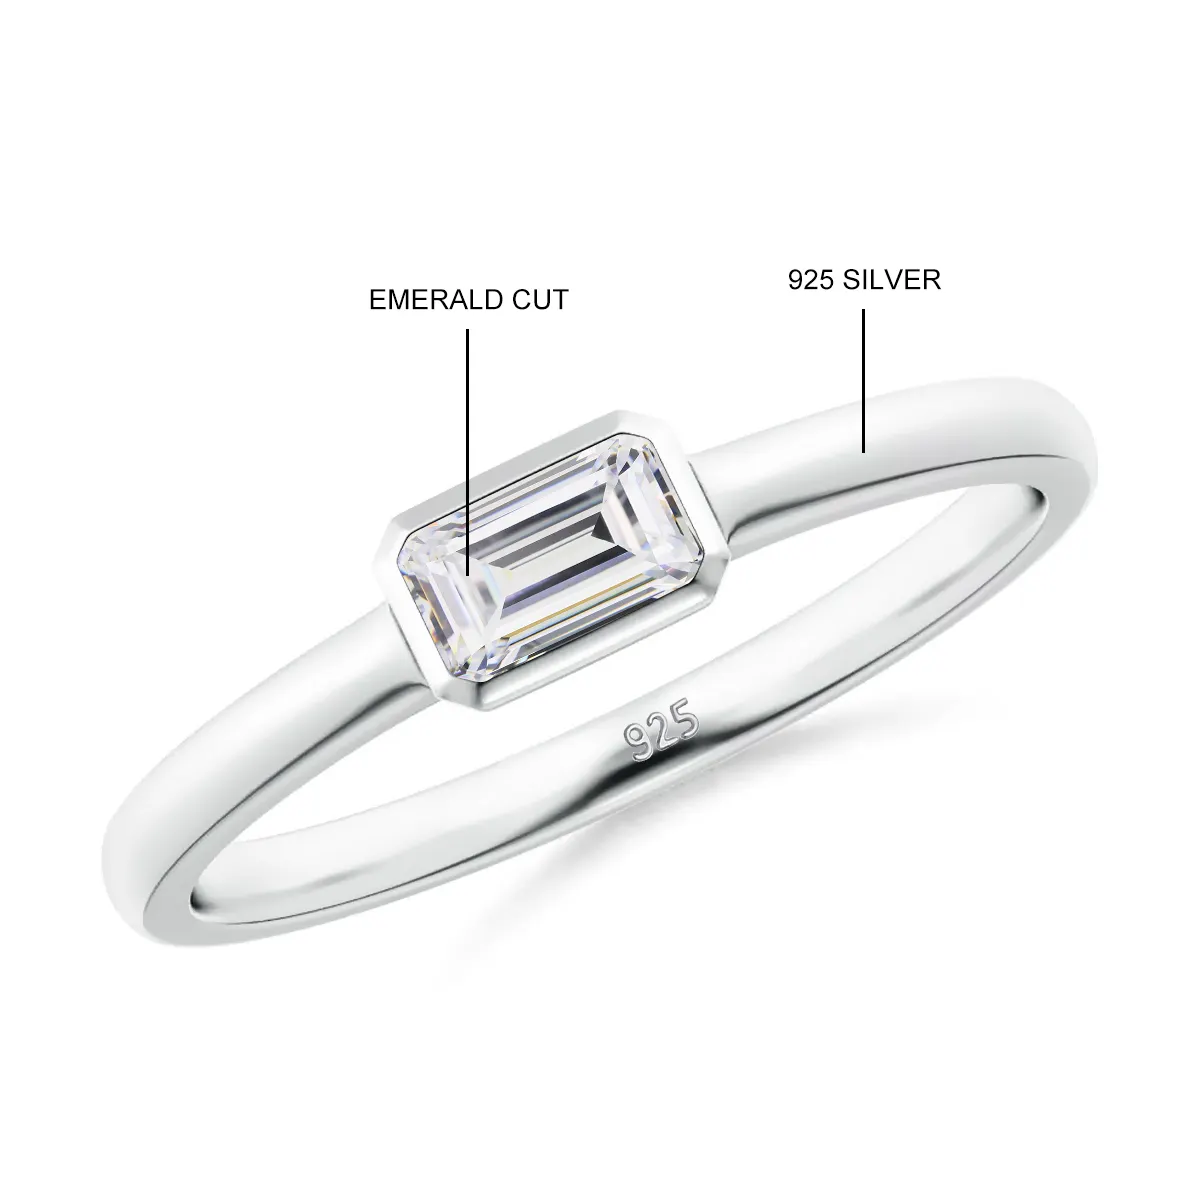 Benutzer definierte feine Edelstein verstellbare Smaragd Gold 925 Sterling Silber Diamant Engagement Hochzeits schmuck Frauen Moissan ite Ring